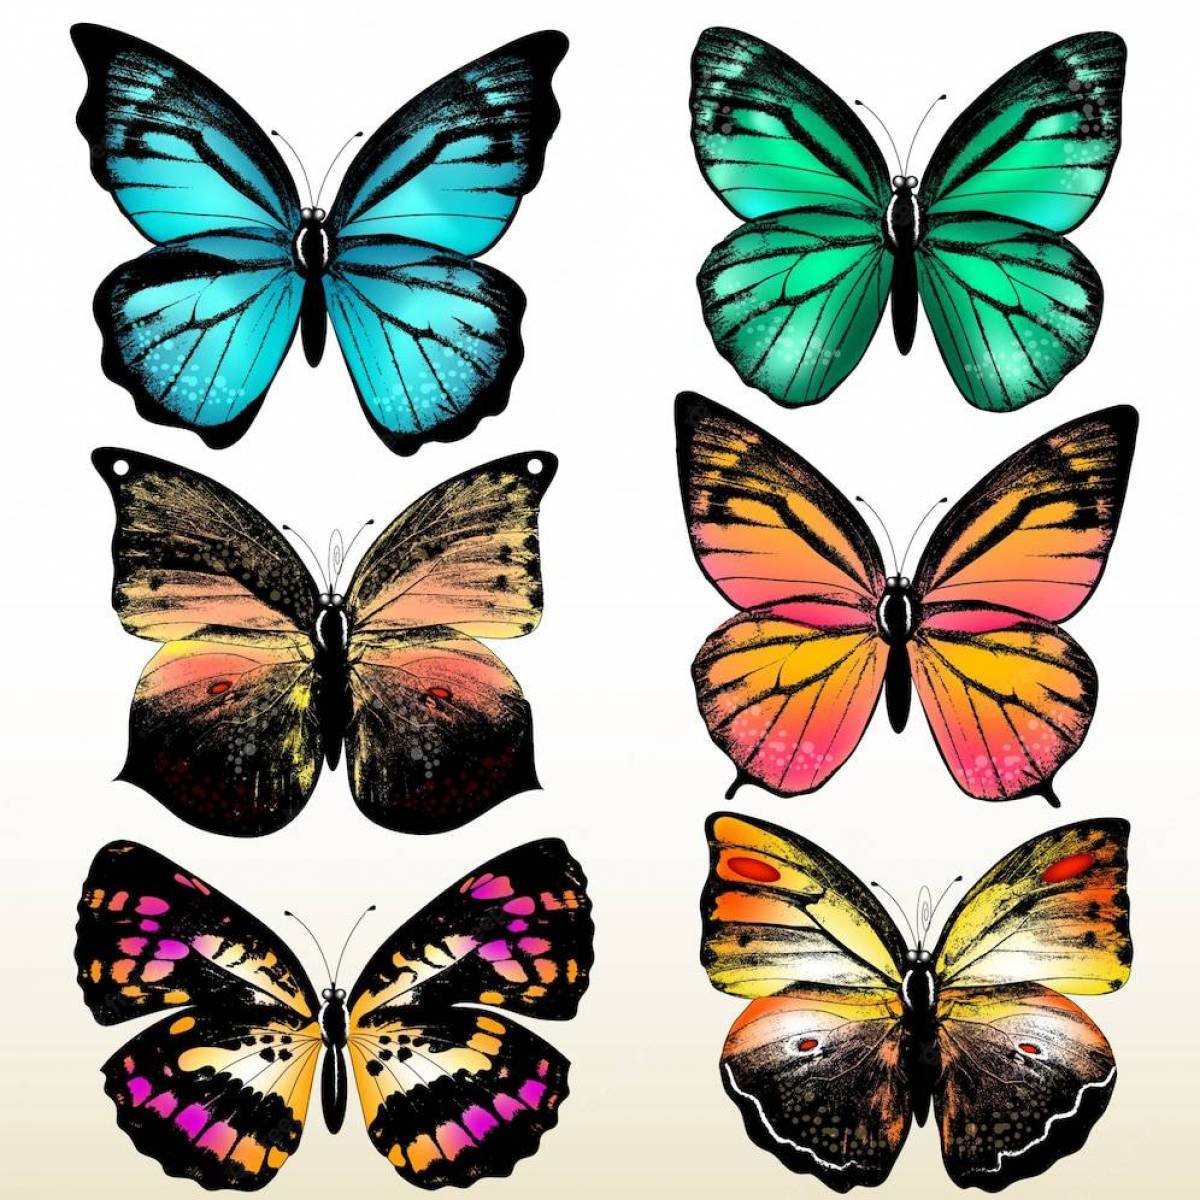 Шаблон бабочек для печати. Разноцветные бабочки. Бабочки для вырезания цветные. Бабочки трафарет цветные. Цветные бабочки для печати.